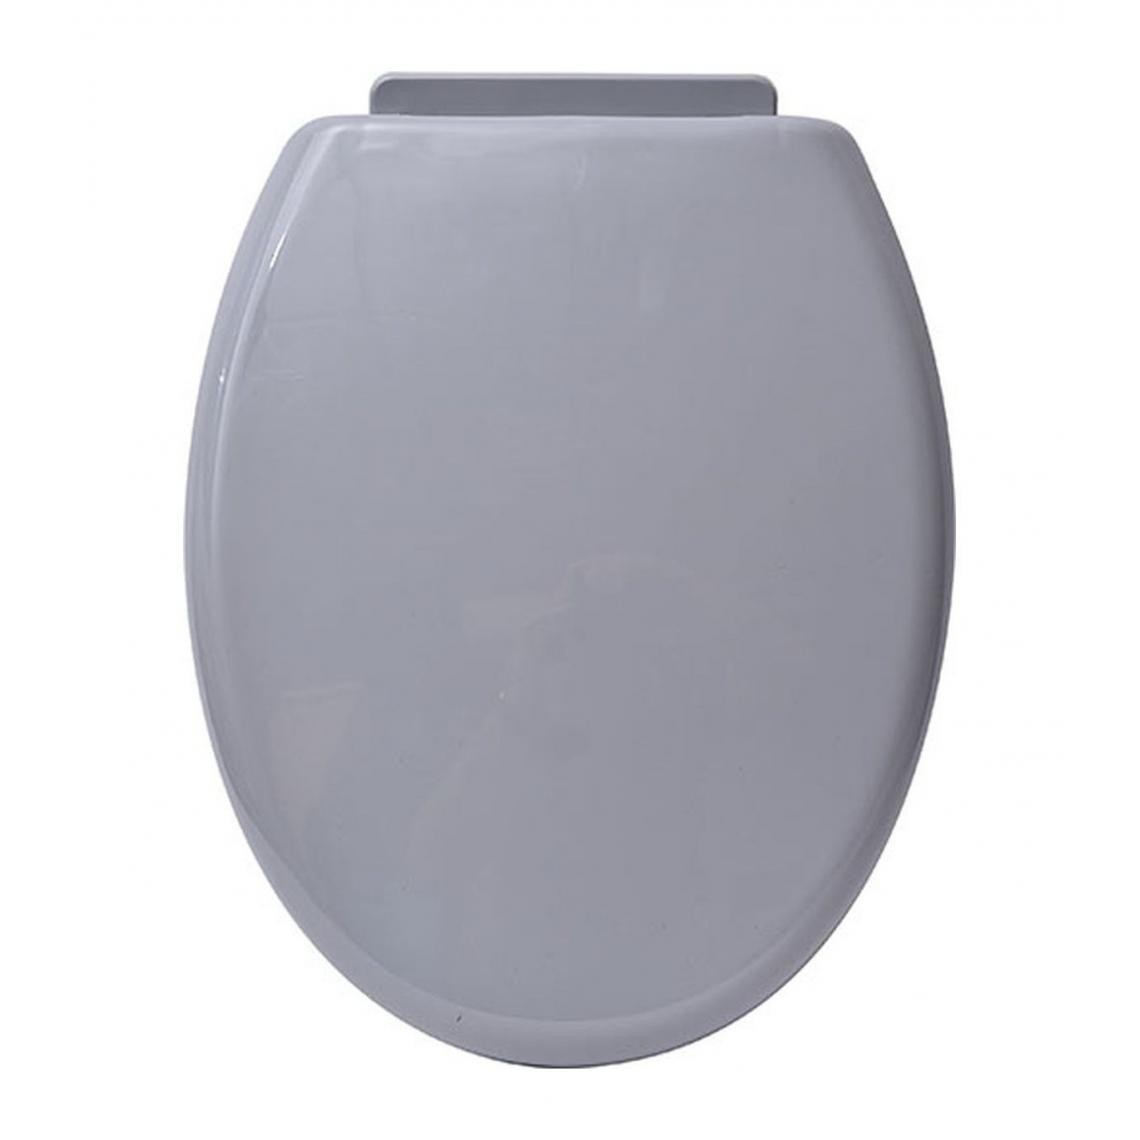 Tendance - TENDANCE - Abattant WC standard Gris avec kit de fixation - Abattant WC